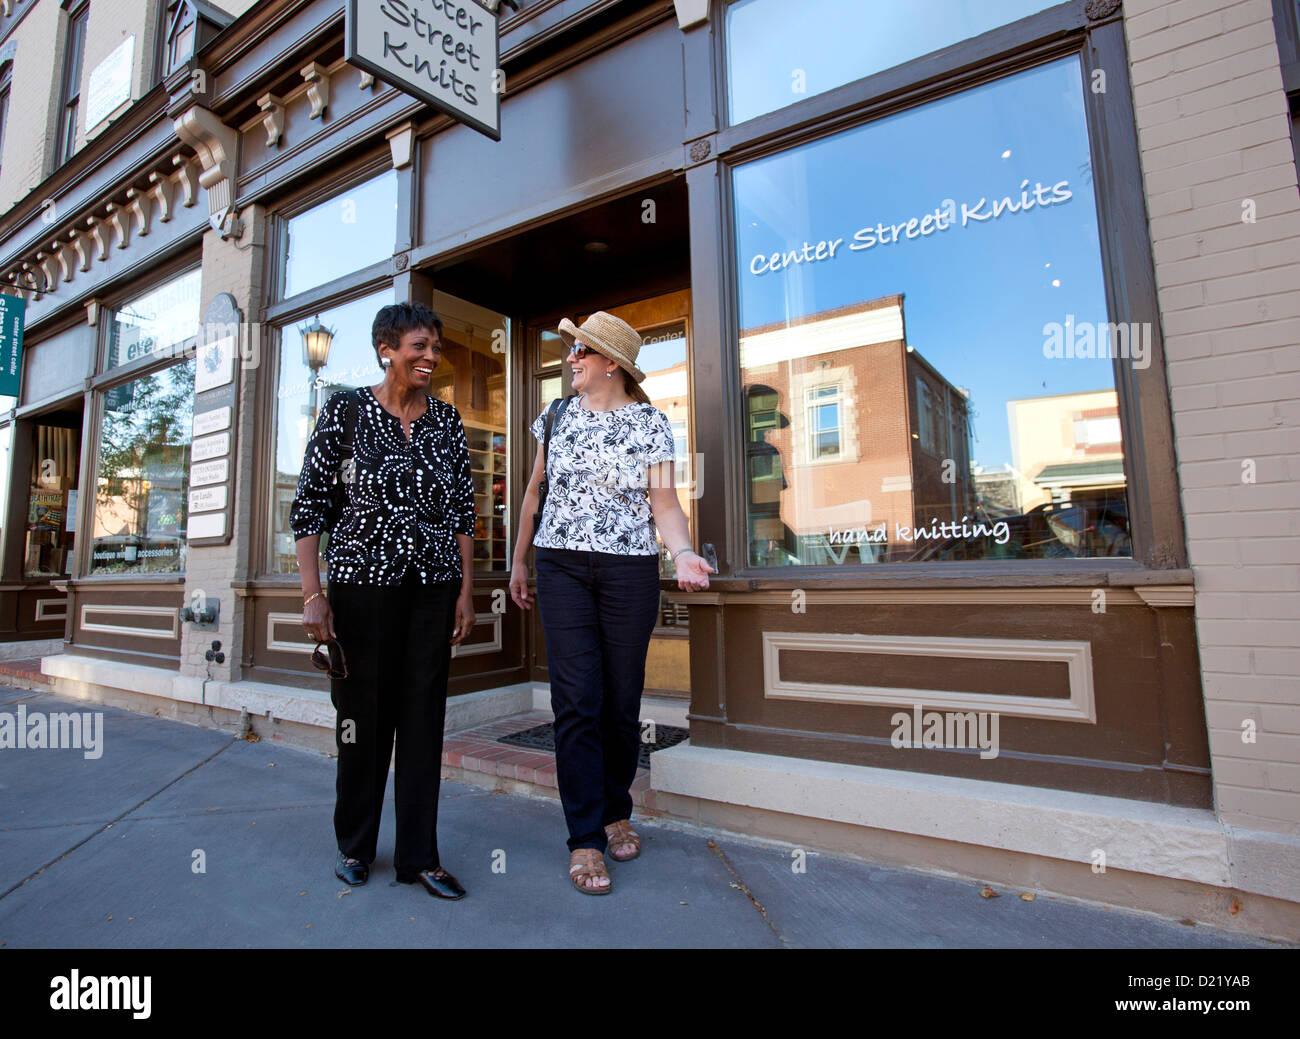 Deux femmes sortant de magasin, petite ville, USA Banque D'Images